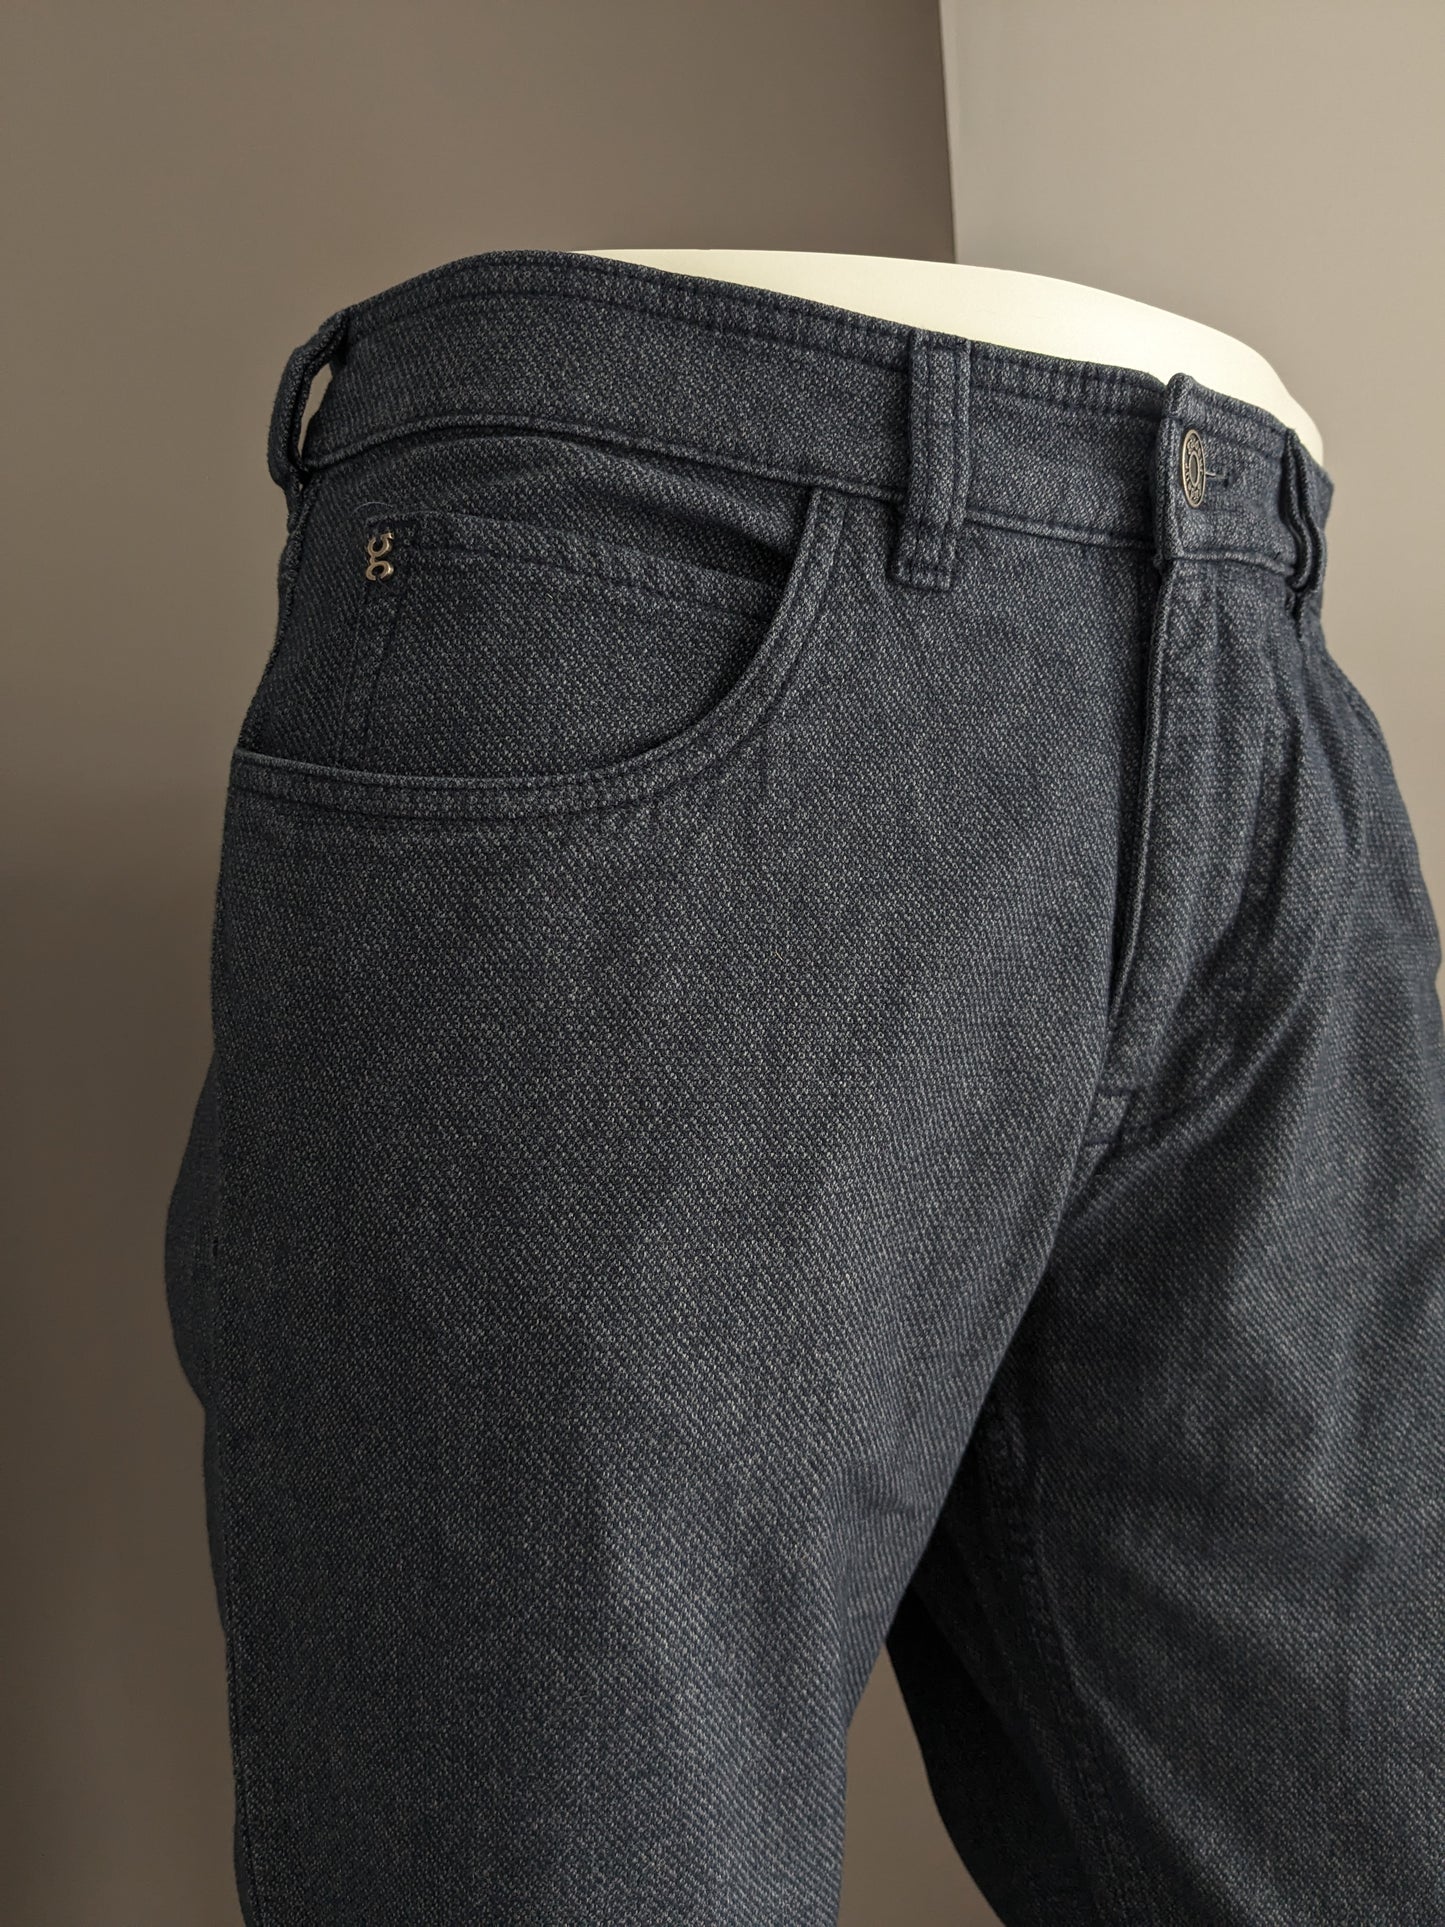 Pantalon / pantalon du jardin. Gris bleu mélangé. Ajustement moderne. Taille 34 - L34.